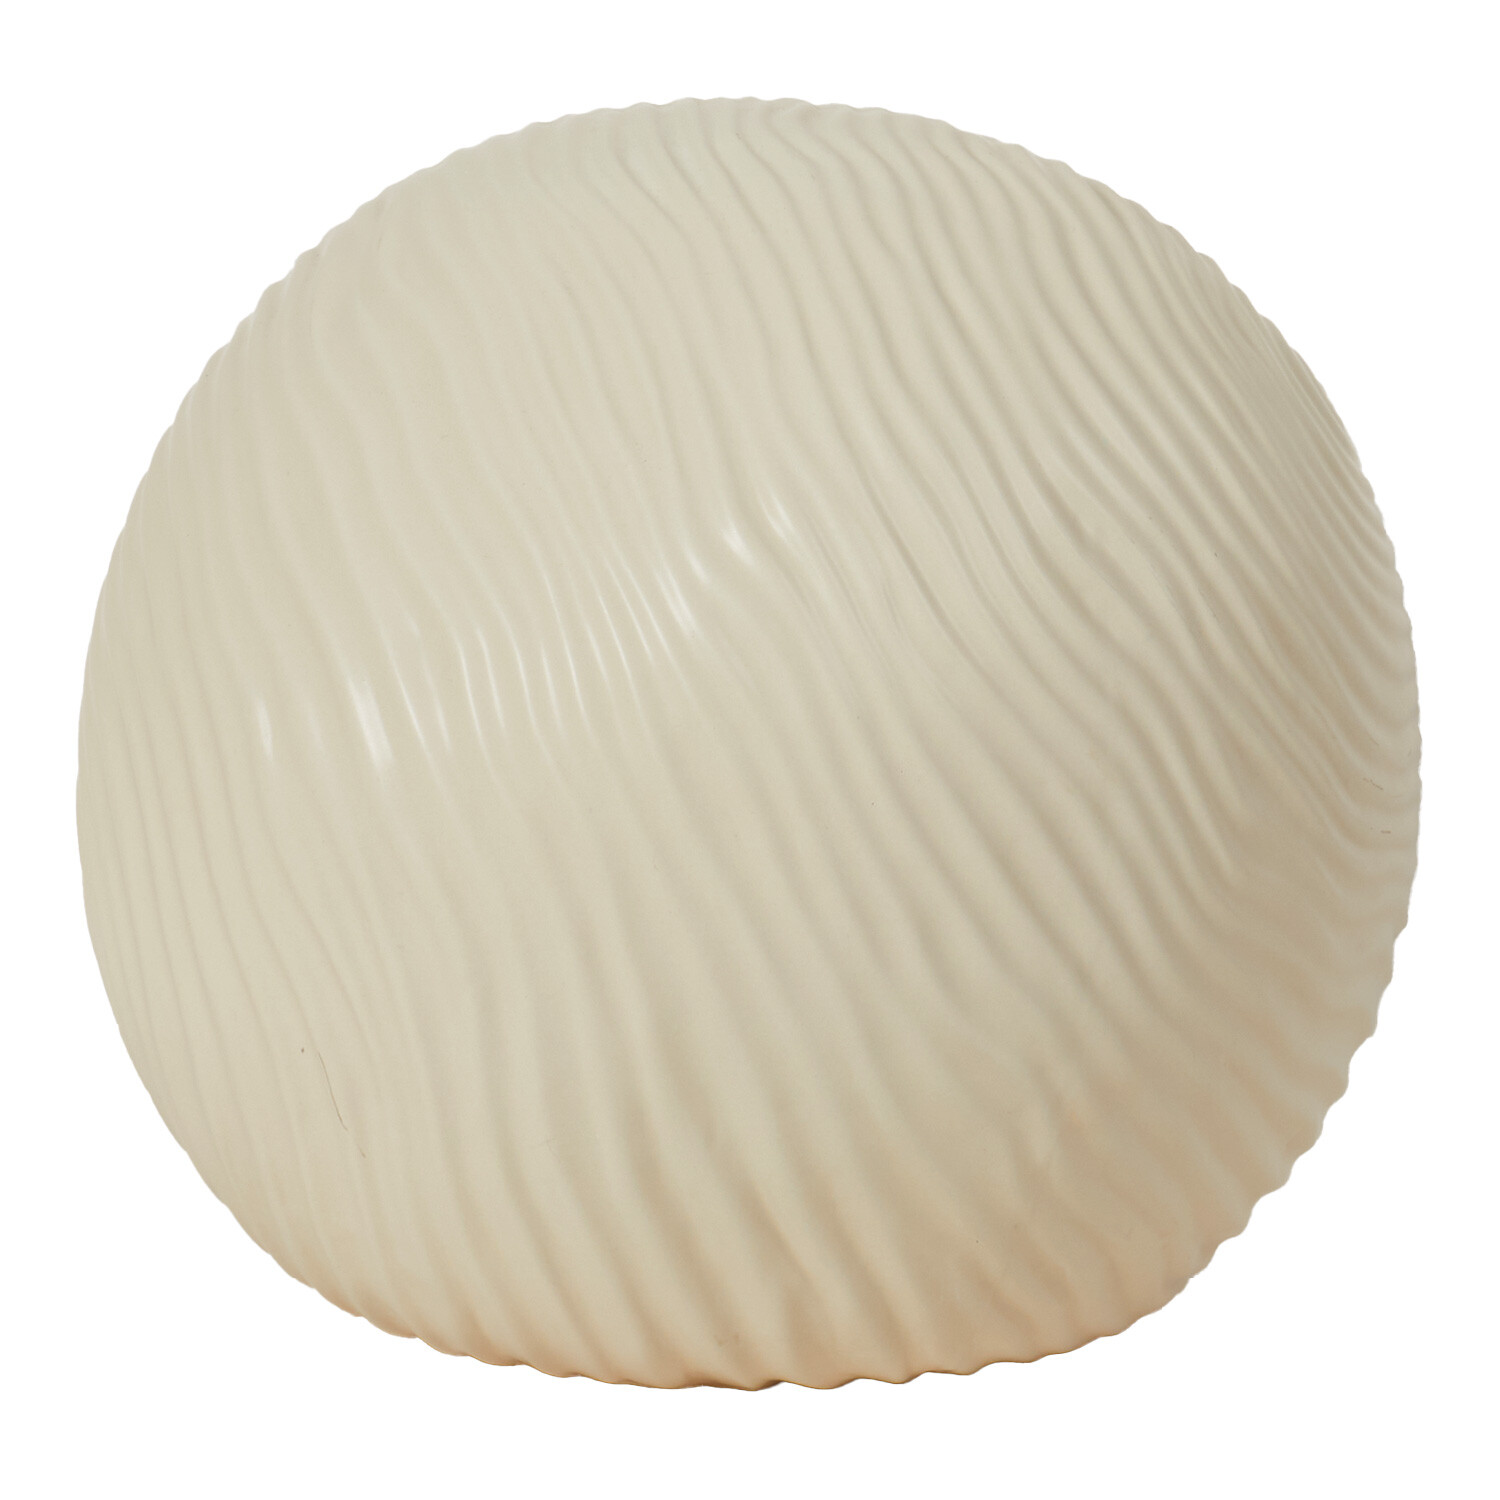 Cream Ceramic Ball - Cream / Large Image 1